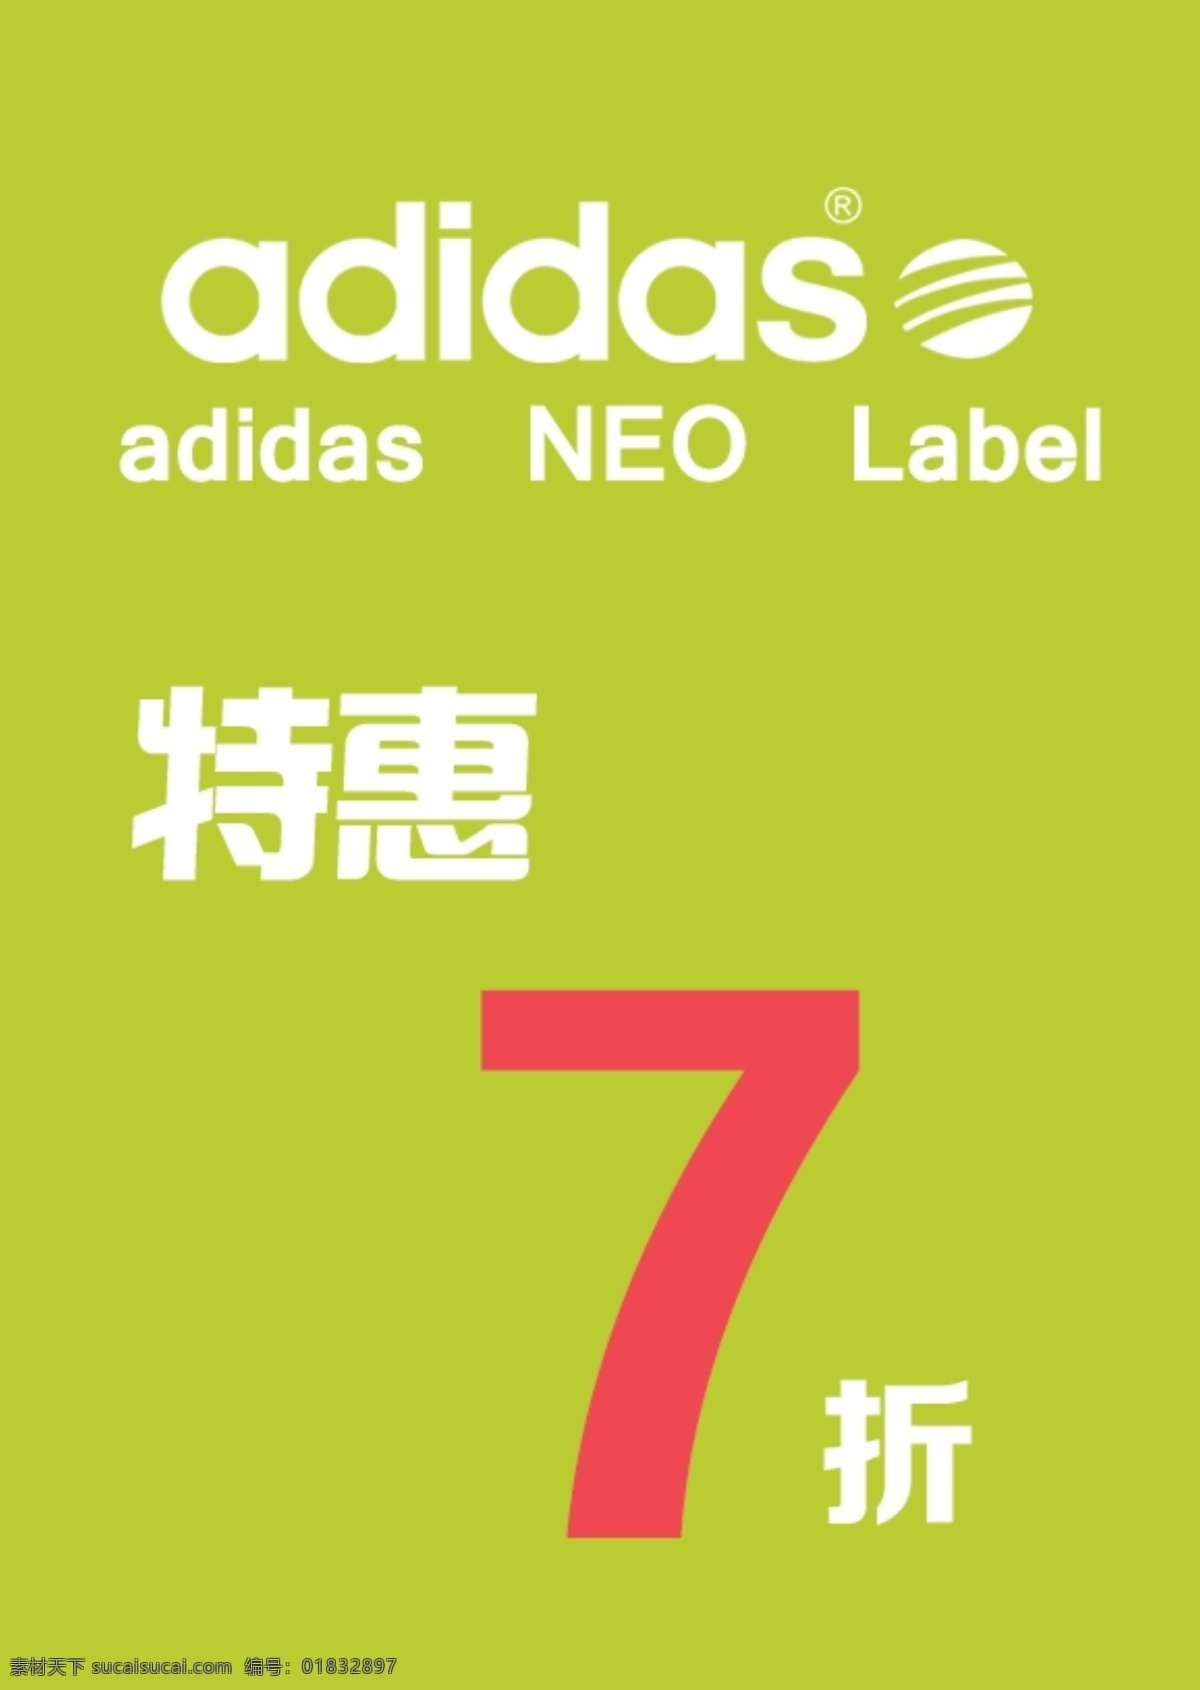 addidas 海报 特惠7折 嫩绿色 阿迪标志 neo label